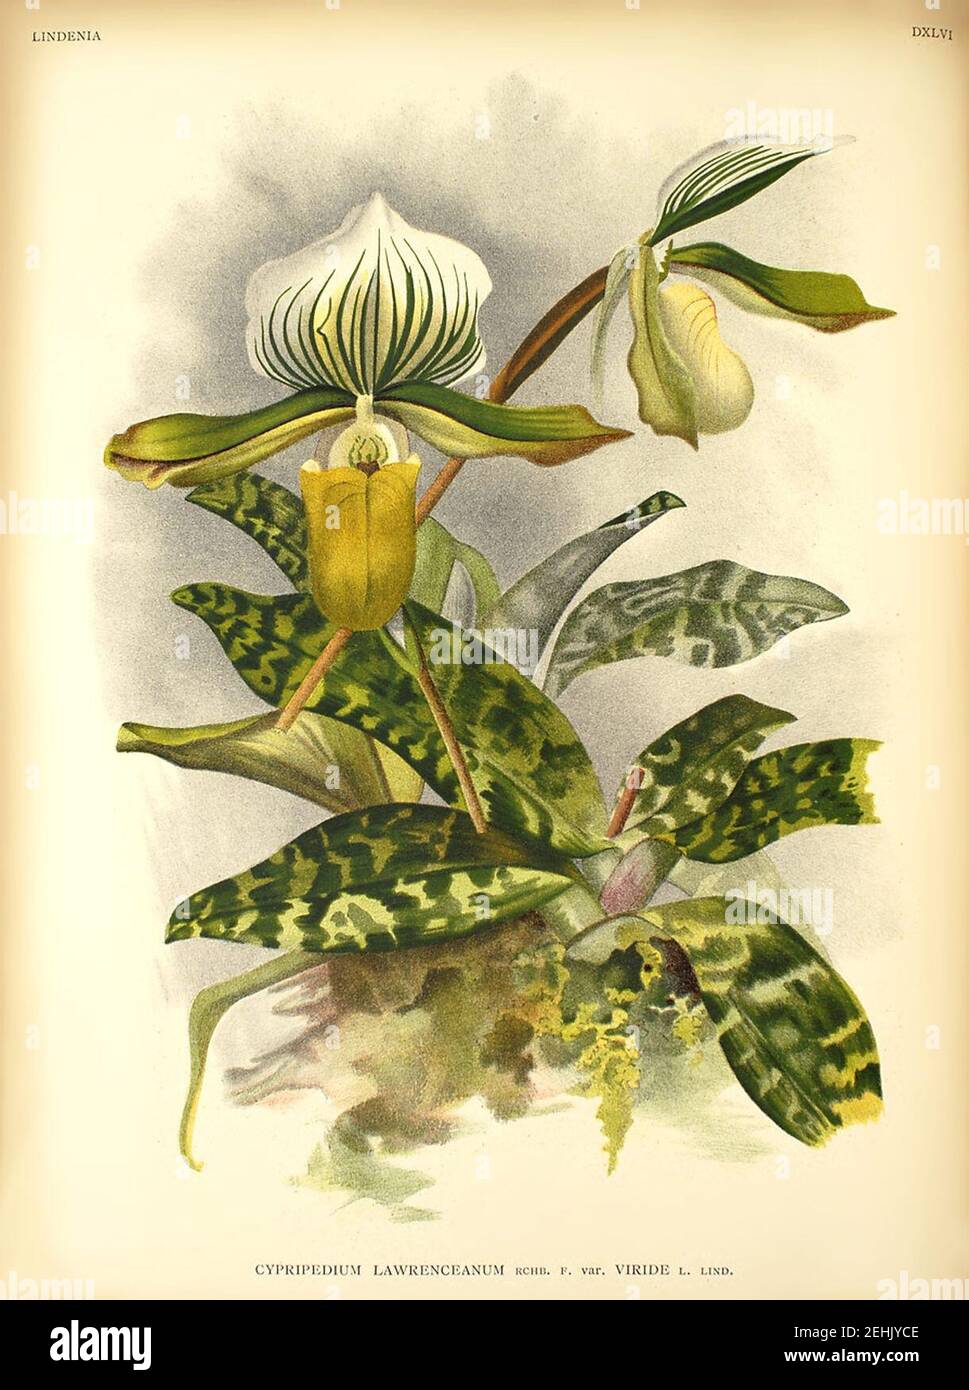 Paphiopedilum lawrenceanum v viride. Stock Photo